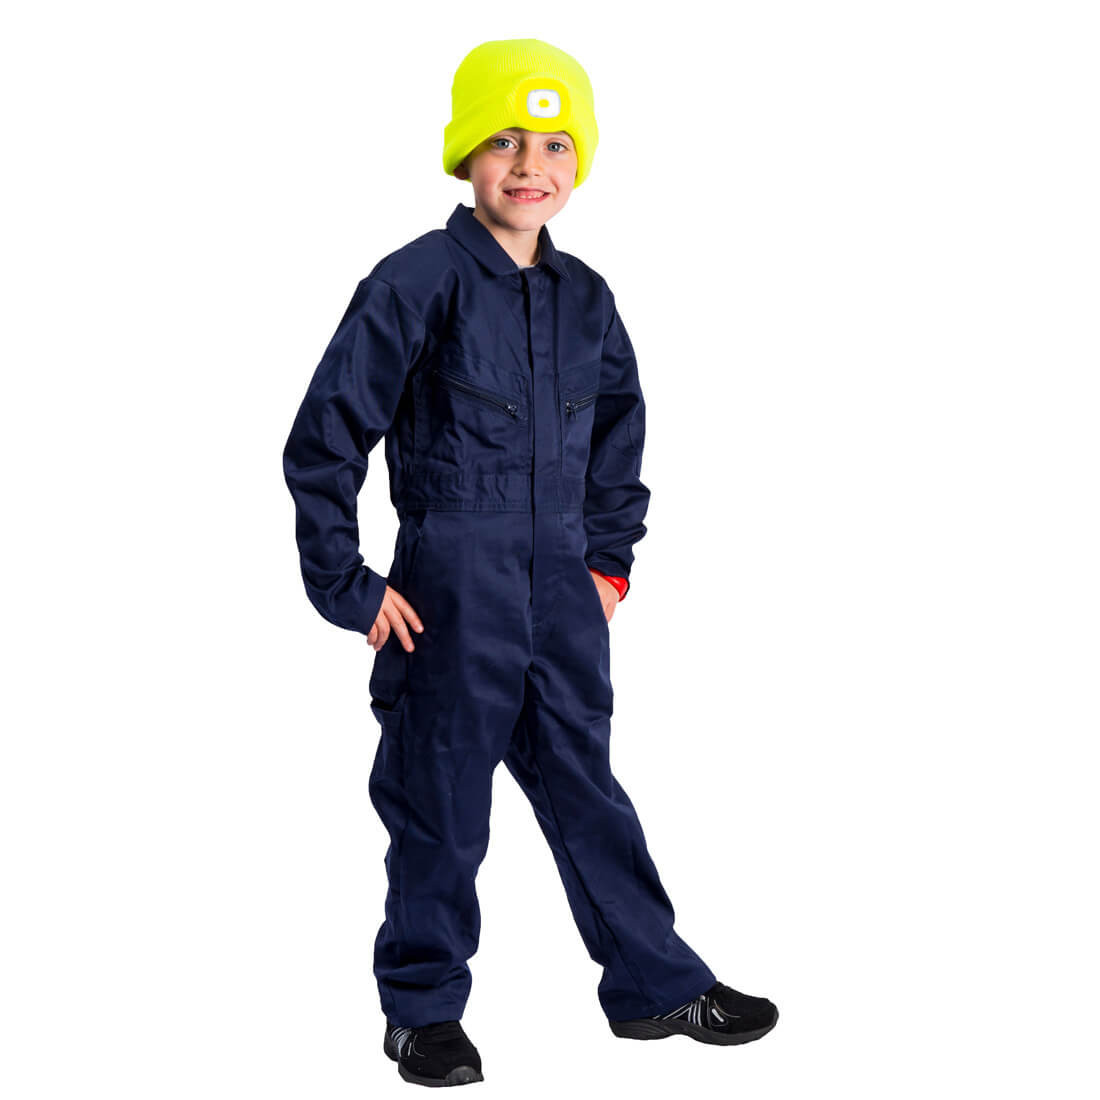 Bonnet à LEAD Junior - Les vêtements de protection